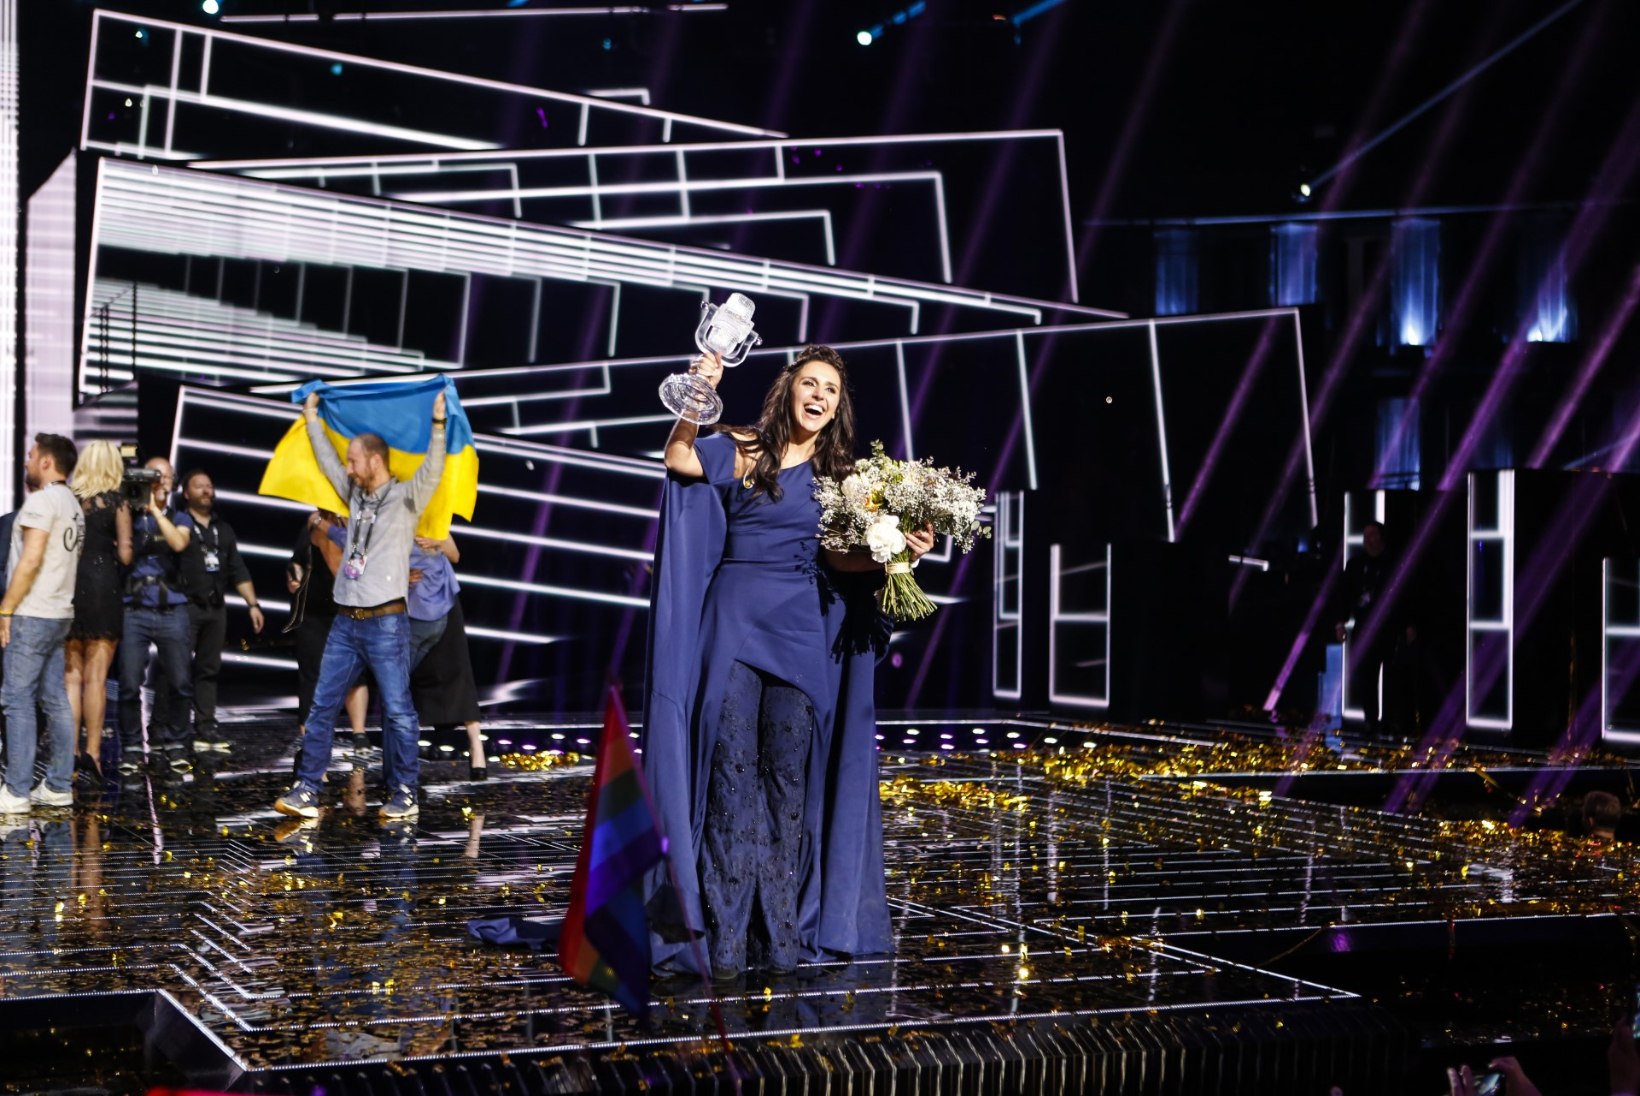 Eurovisioni tulemuste muutmiseks algatatud petitsioon on saanud üle 350 000 allkirja